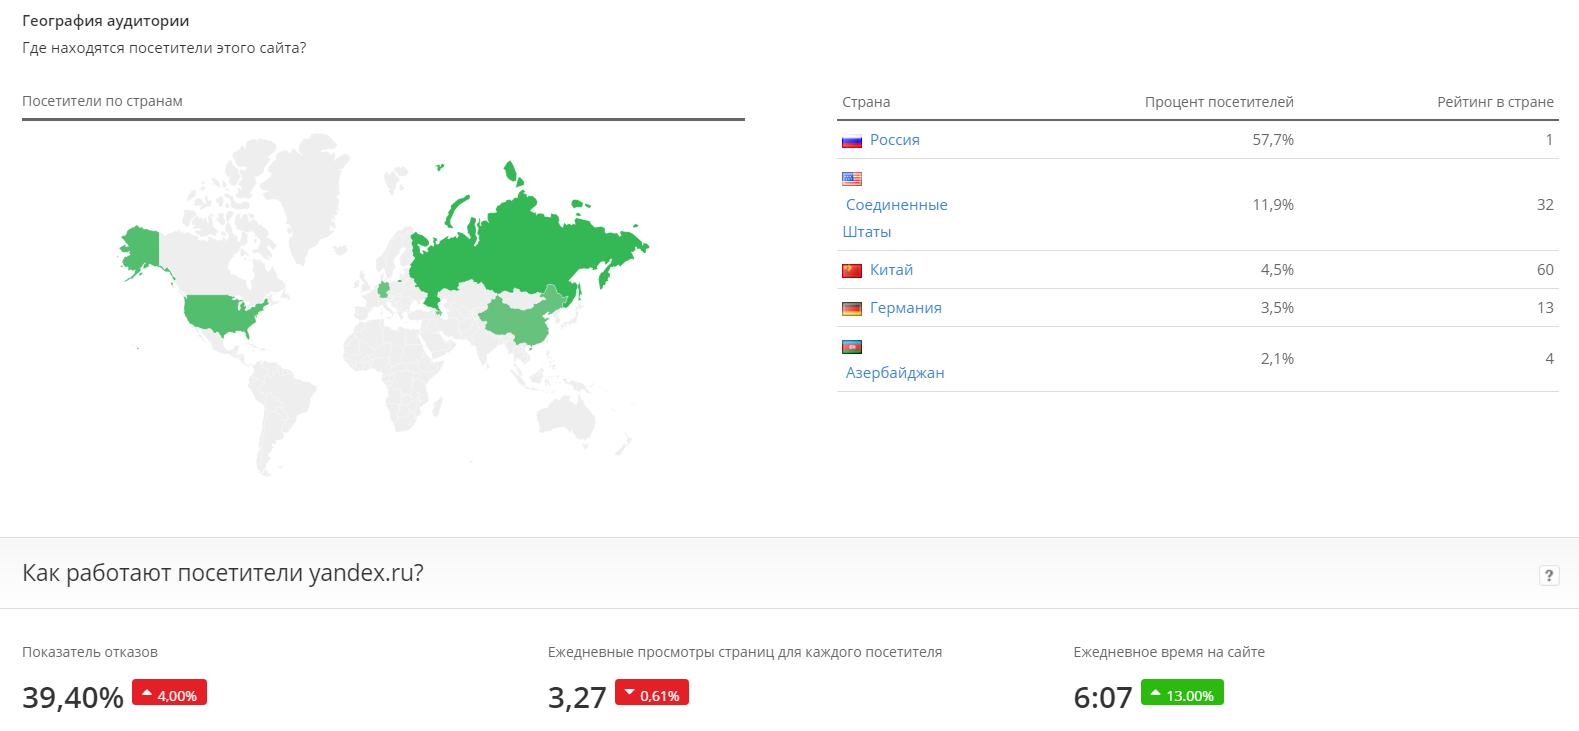 ИКС сайта, рейтинг сайта Яндекс.png